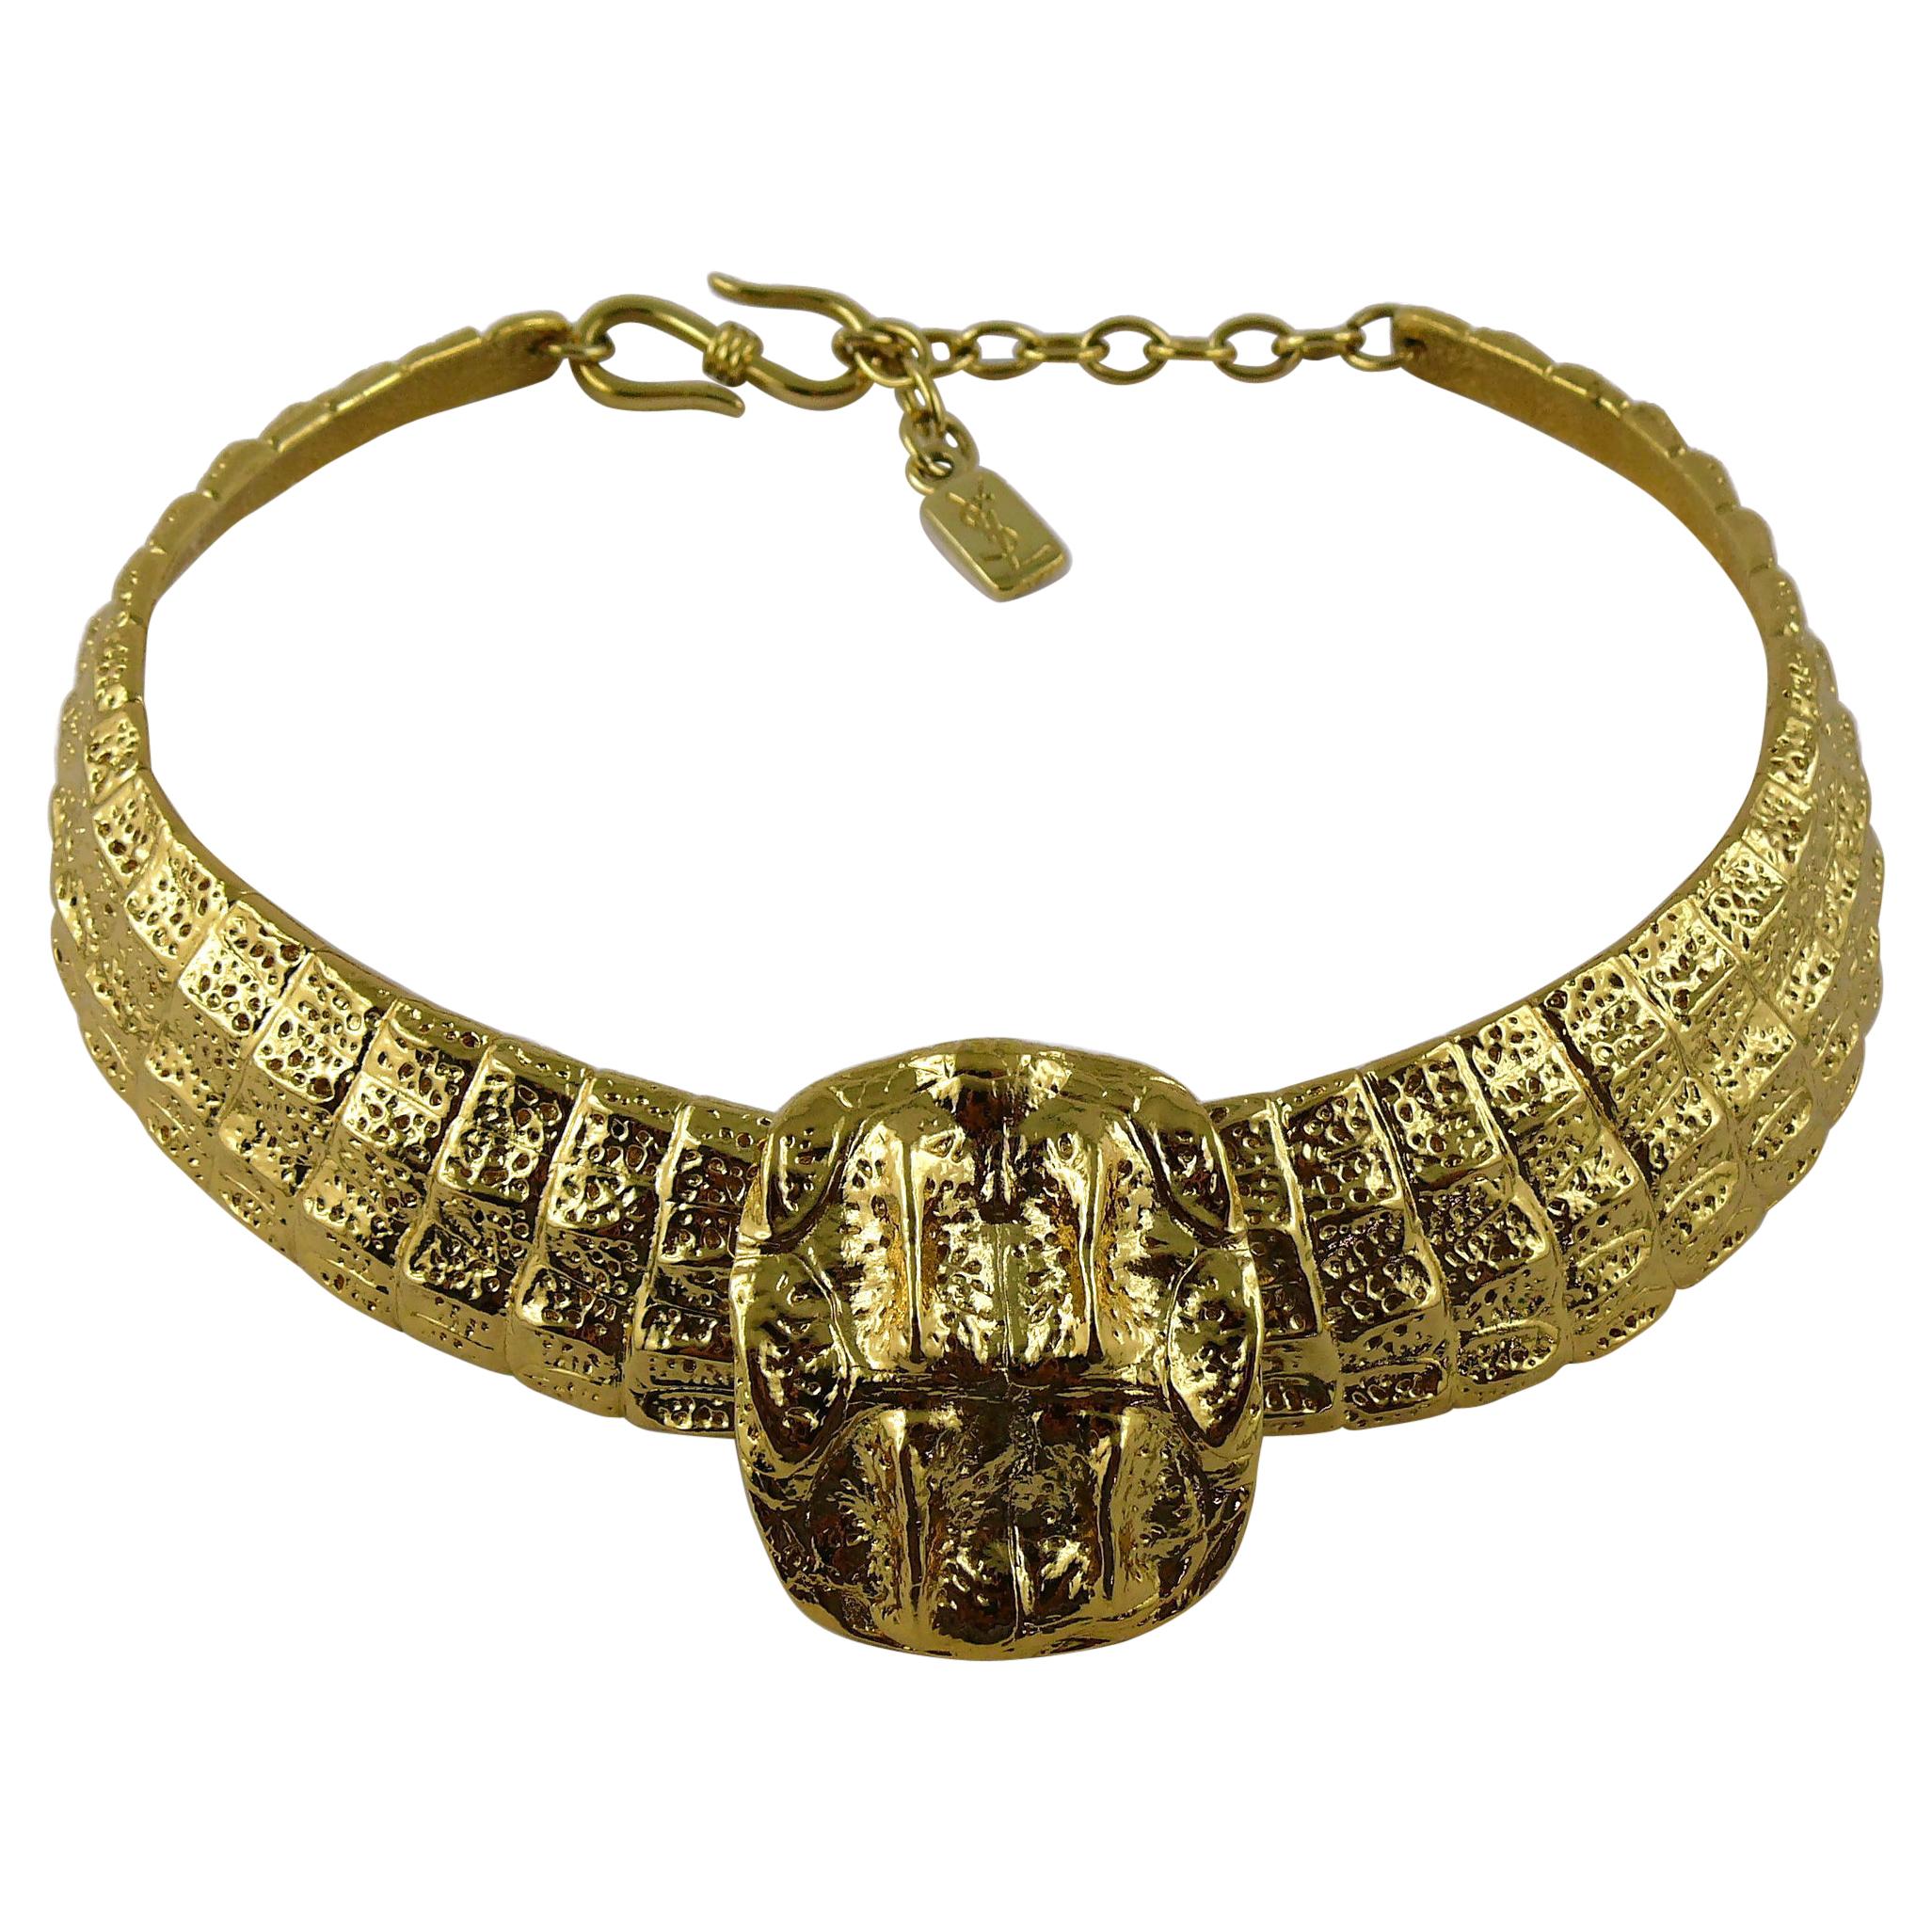 Yves Saint Laurent YSL Vintage Gold Toned Croc Choker Necklace